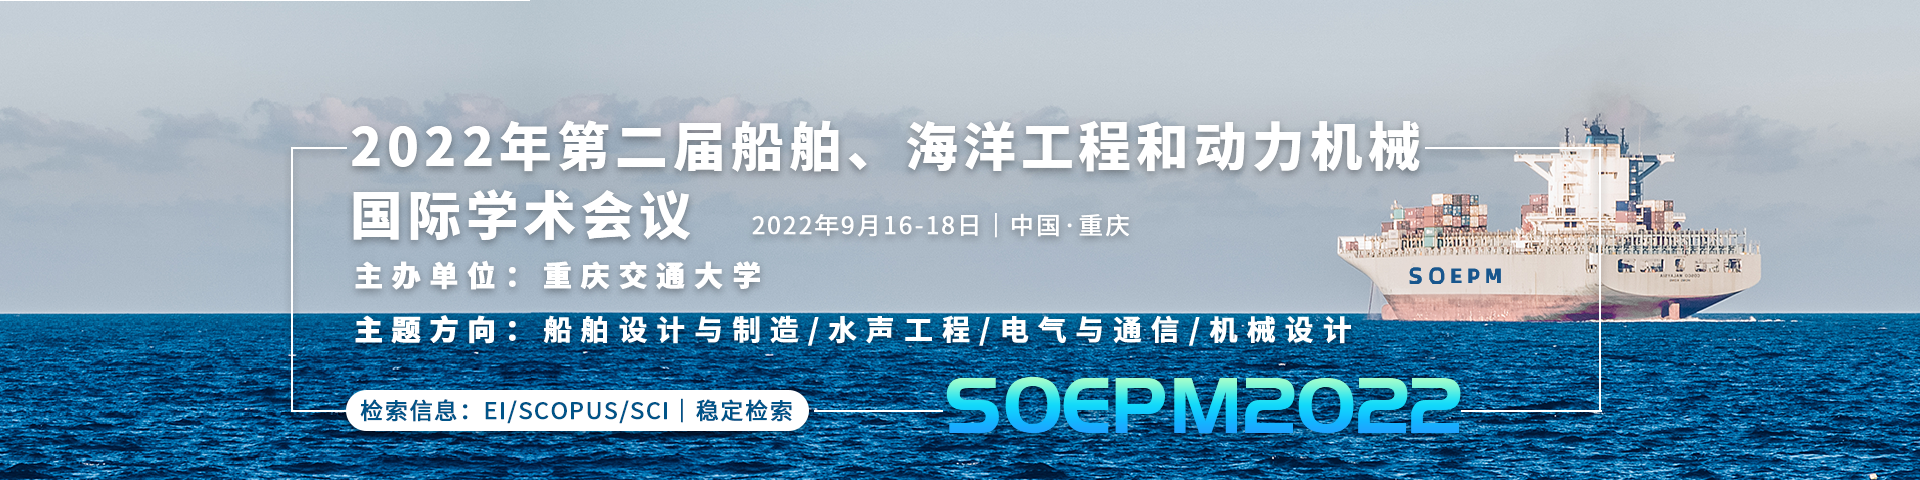 9月16-18-重庆SOEPM-艾思banner-0630.png